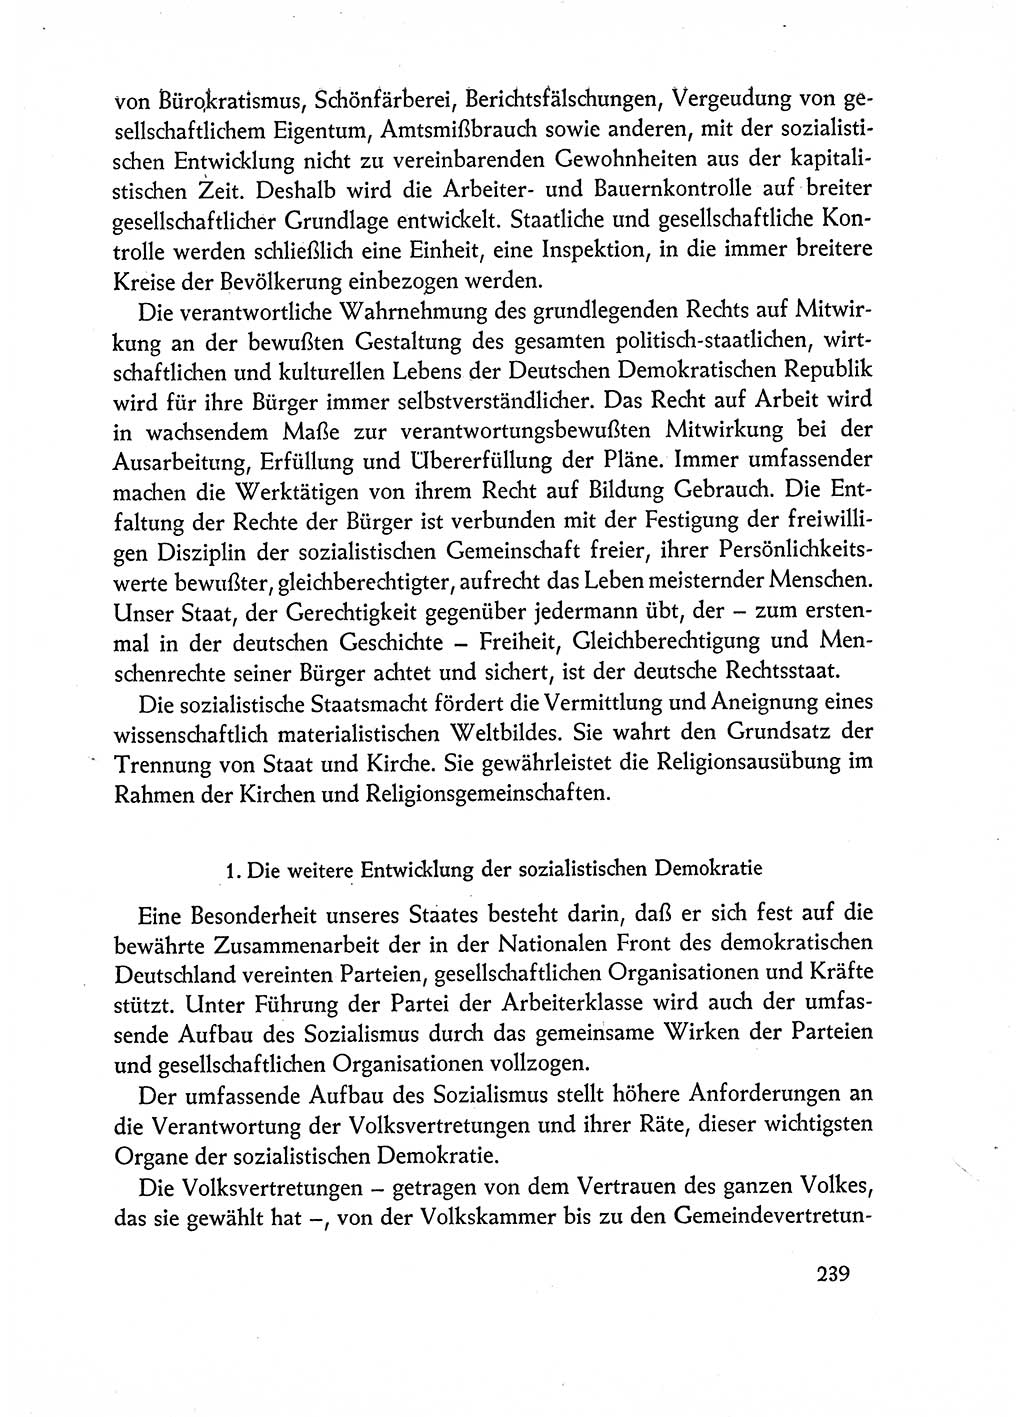 Dokumente der Sozialistischen Einheitspartei Deutschlands (SED) [Deutsche Demokratische Republik (DDR)] 1962-1963, Seite 239 (Dok. SED DDR 1962-1963, S. 239)